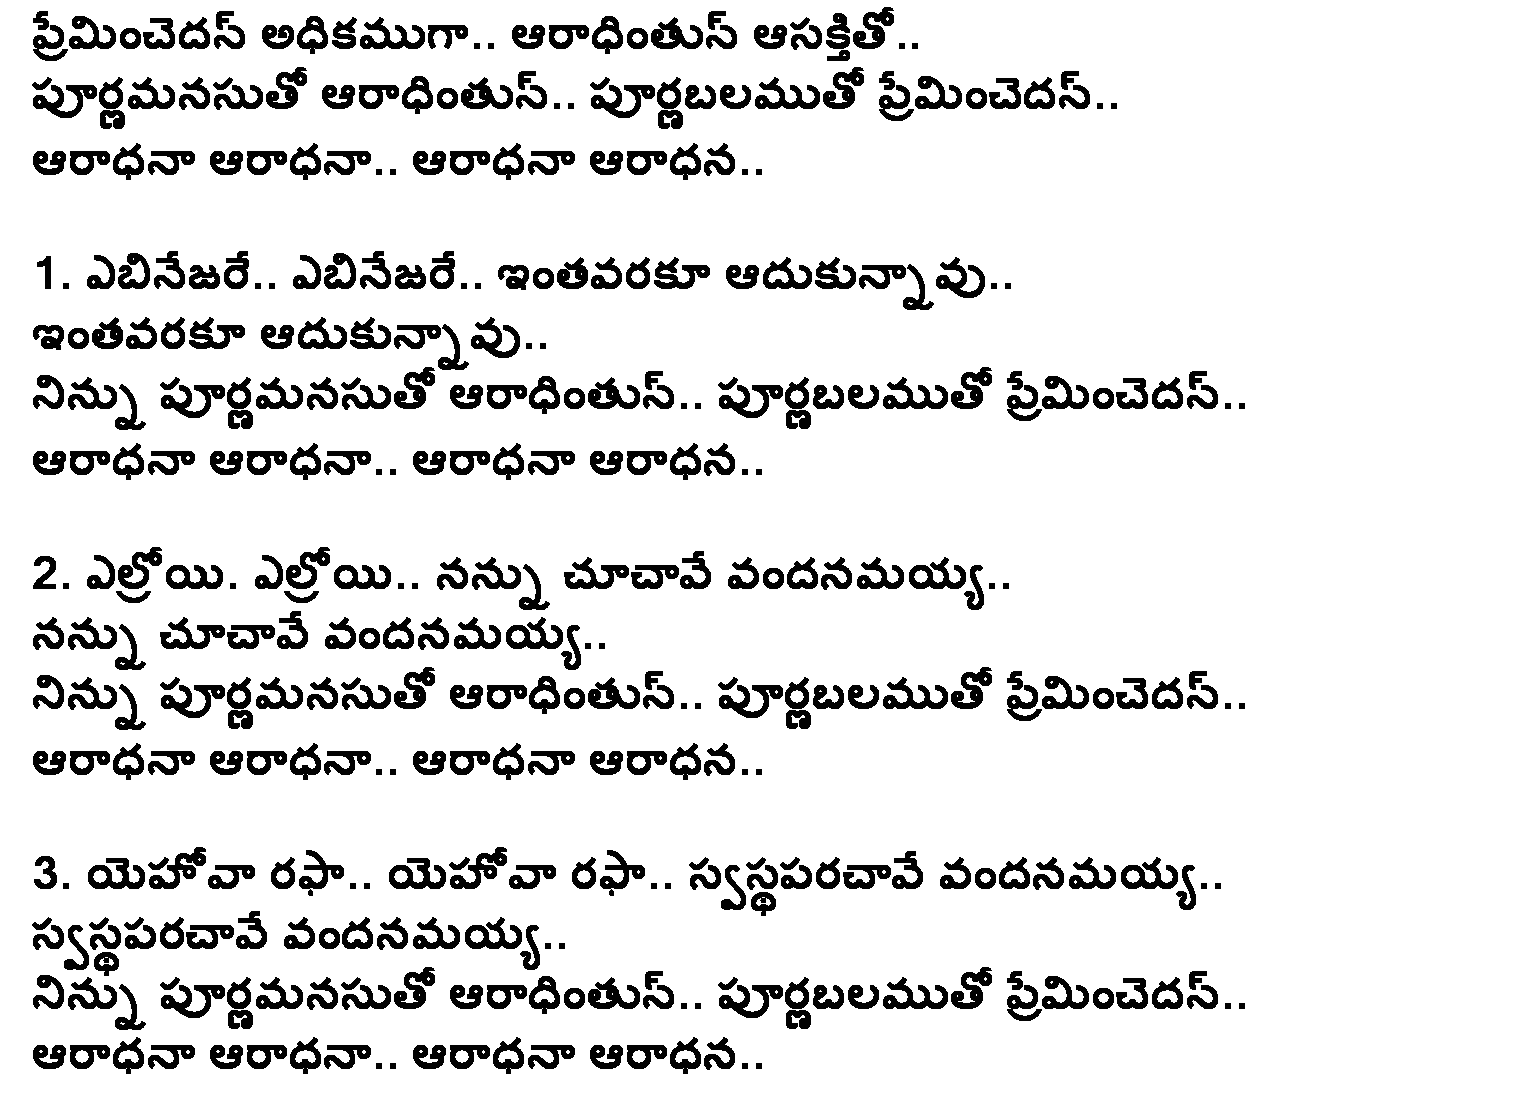 apadbhandavudu telugu movie songs lyrics